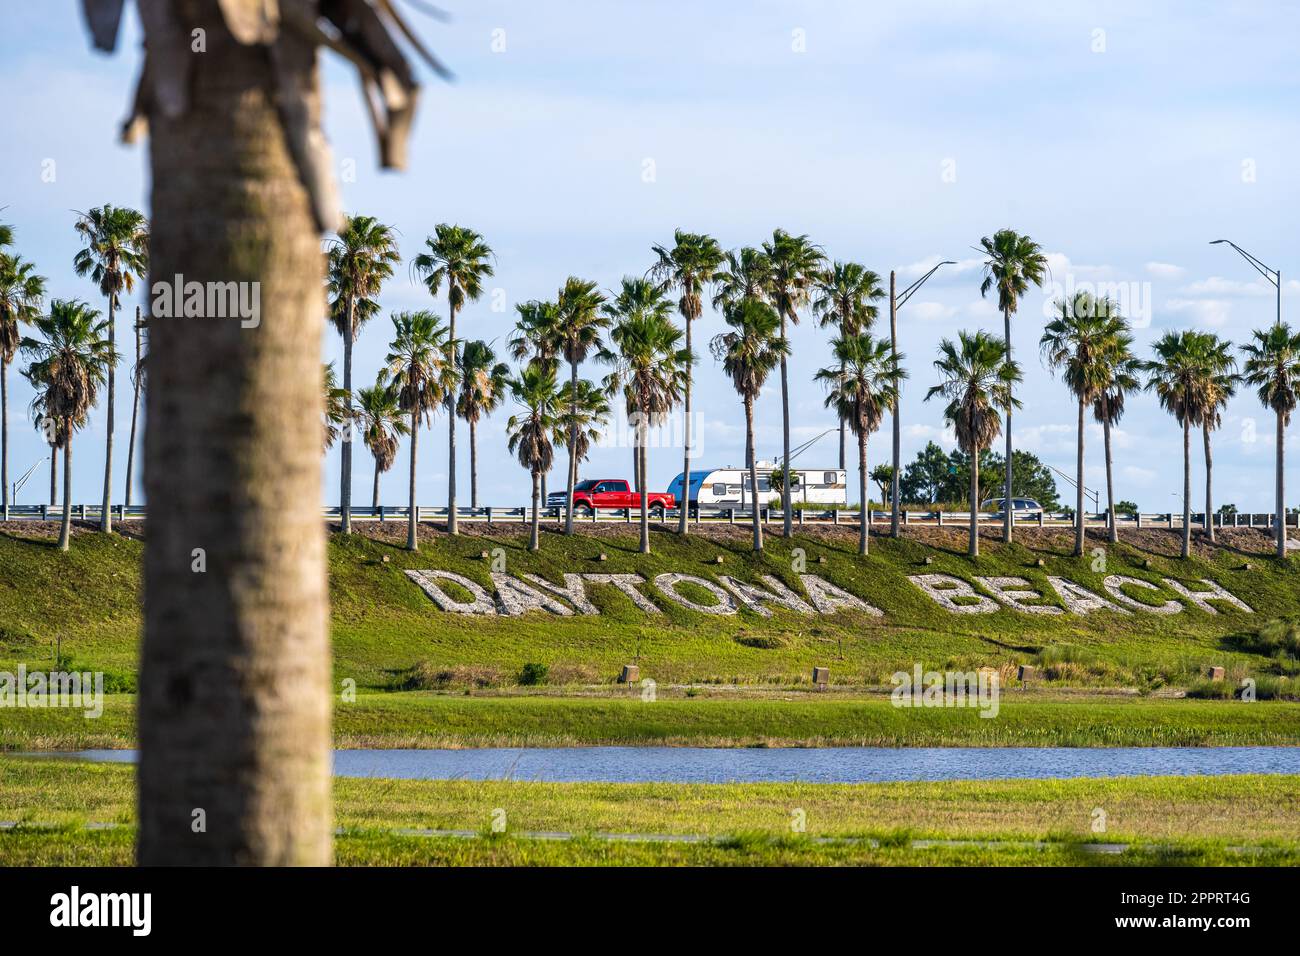 L'iconica Daytona Beach, scritta sotto una fila di palme, accoglie i viaggiatori lungo la i-95 presso LPGA Boulevard a Daytona Beach, Florida. (USA) Foto Stock